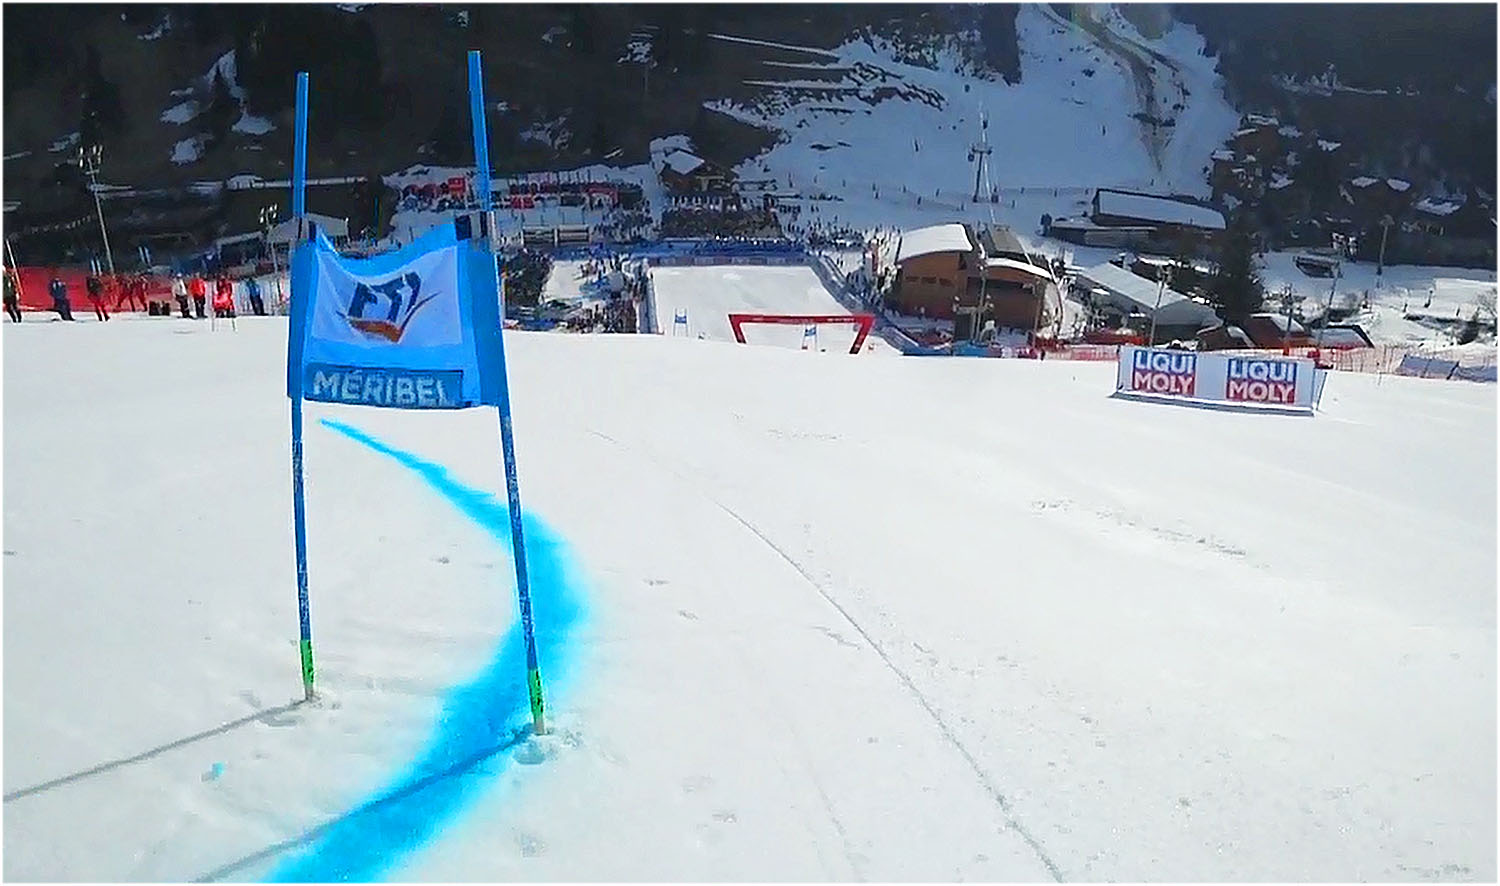 LIVE: Riesenslalom der Damen beim Ski Weltcup Finale in Méribel: Vorbericht, Startliste und Liveticker - Startzeiten: 9.00 Uhr - 12.00 Uhr